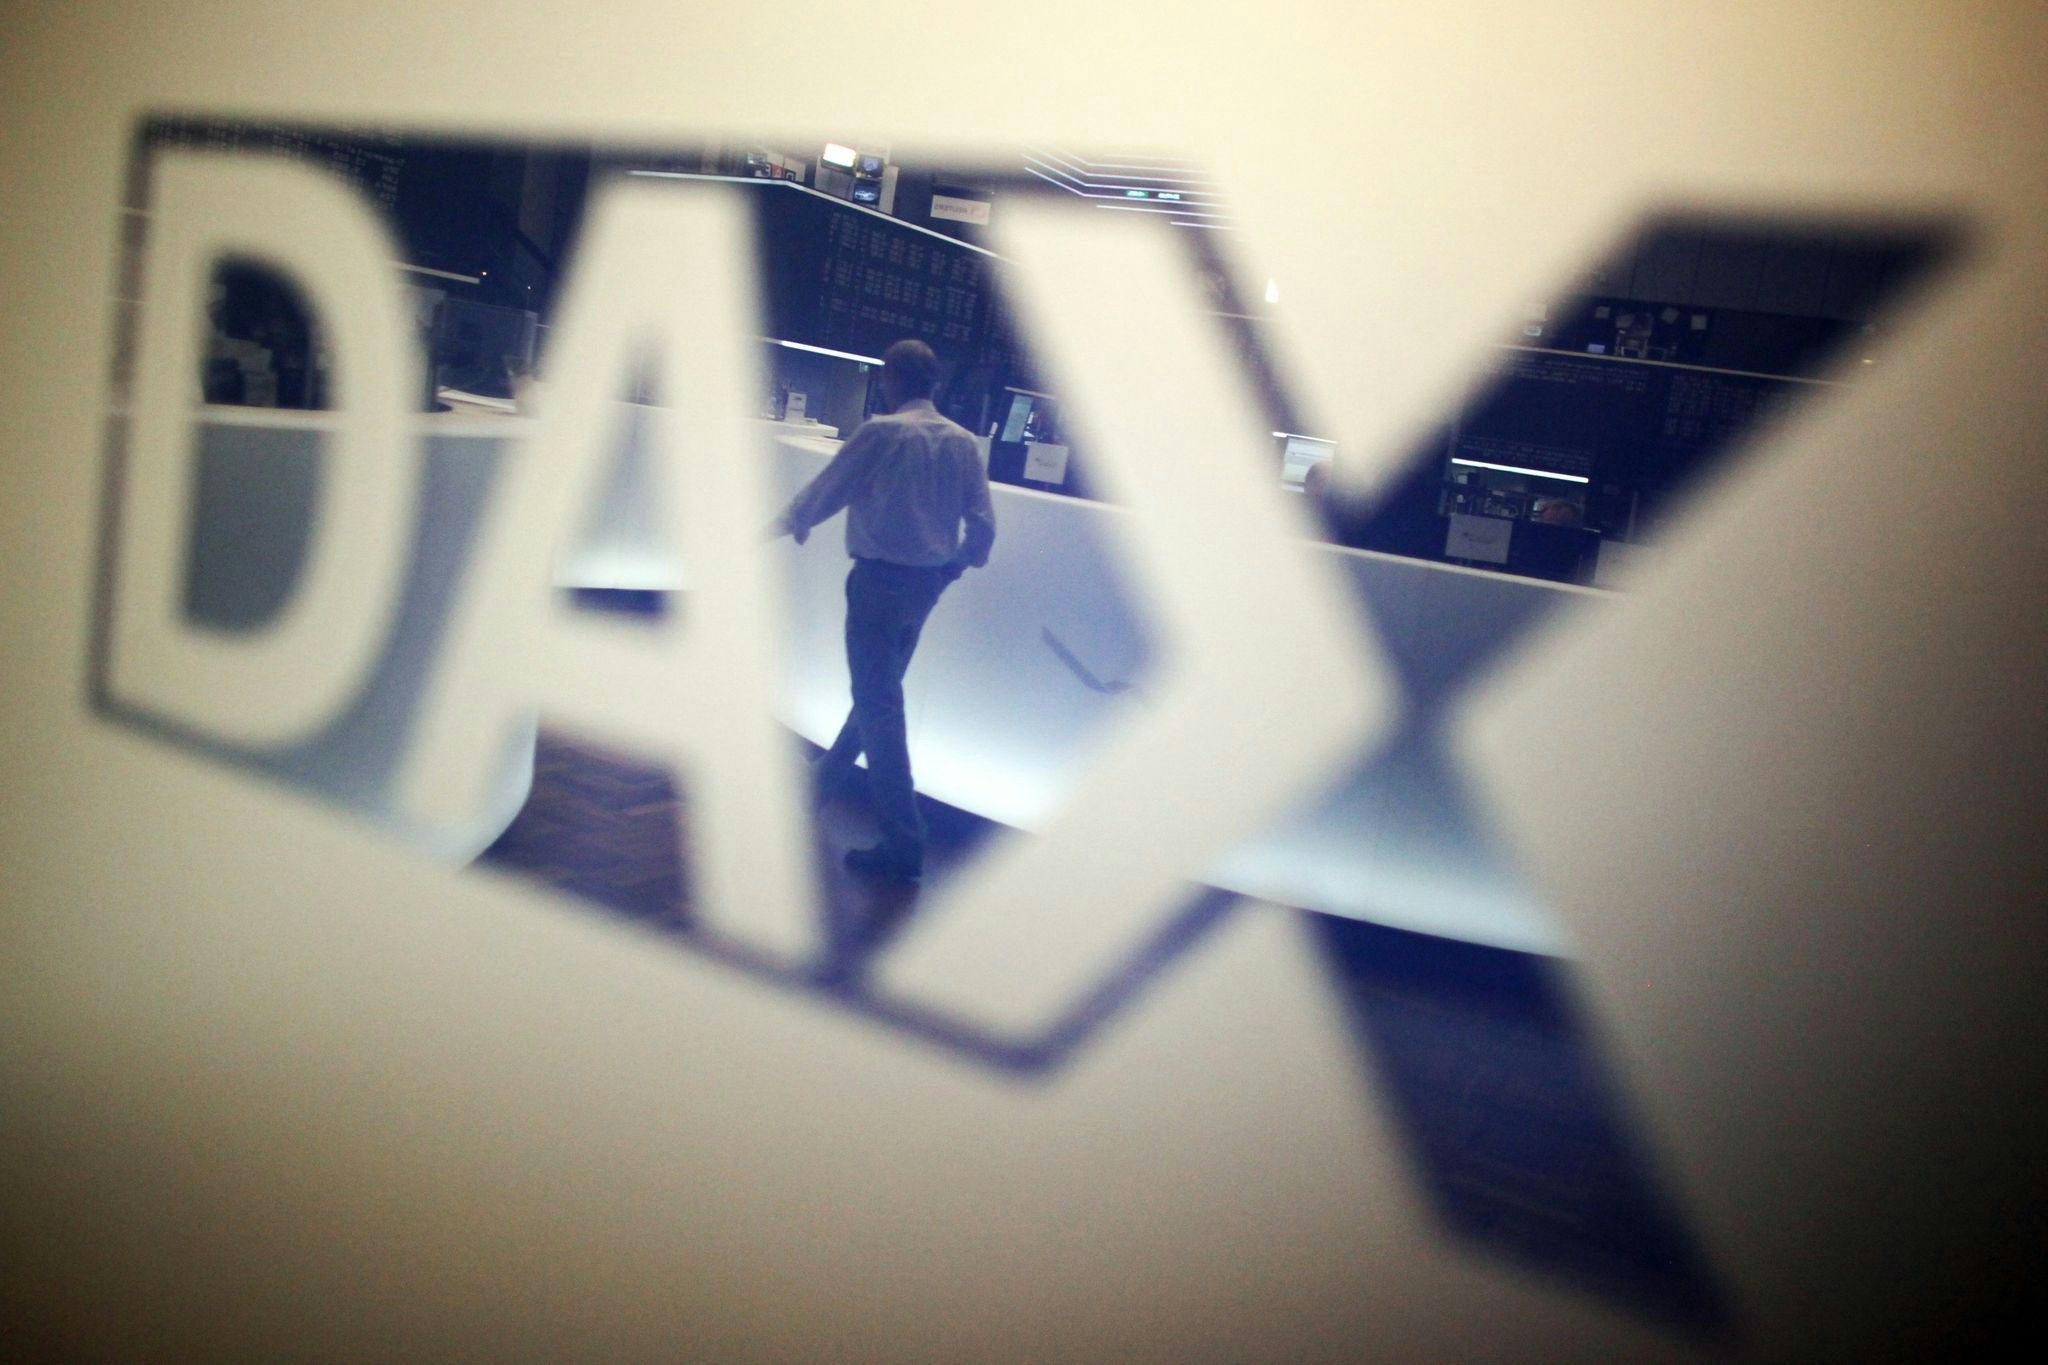 börse in frankfurt: dax-rekordjagd mit leichten ermüdungserscheinungen